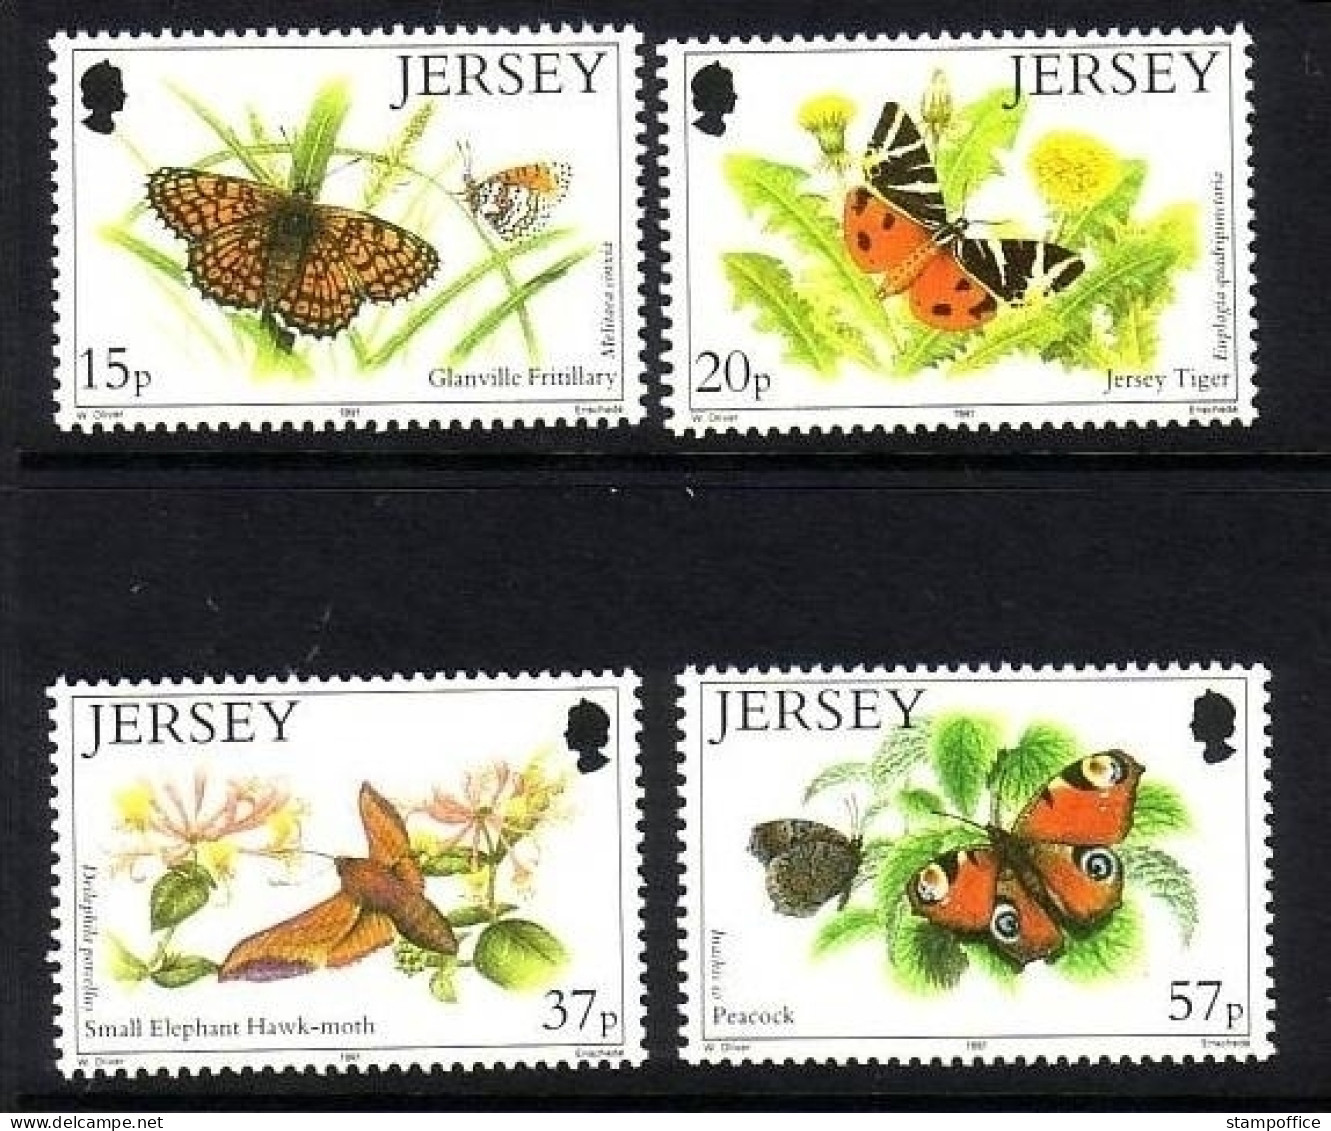 JERSEY MI-NR. 549-552 POSTFRISCH(MINT) SCHMETTERLINGE (I) 1991 - Vlinders